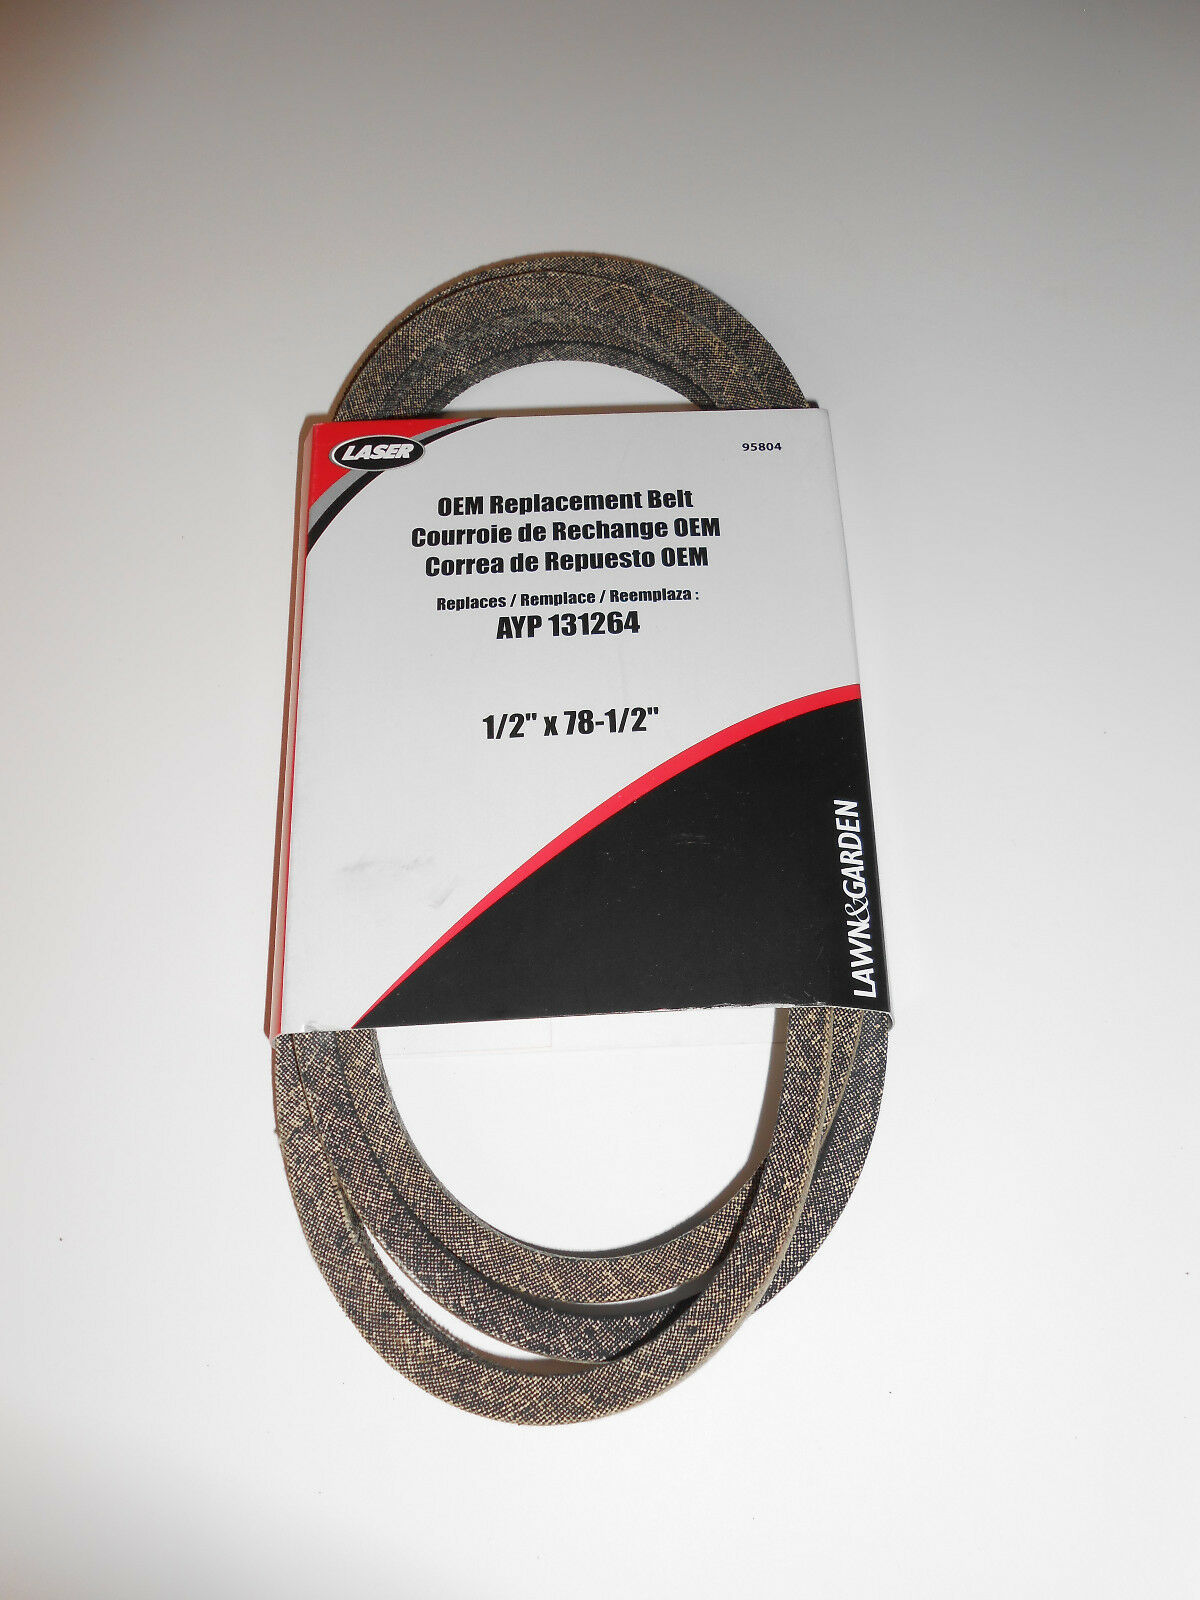 Primary image for Deck Belt Made With Kevlar for Craftsman, Husqvarna 131264, 532131264